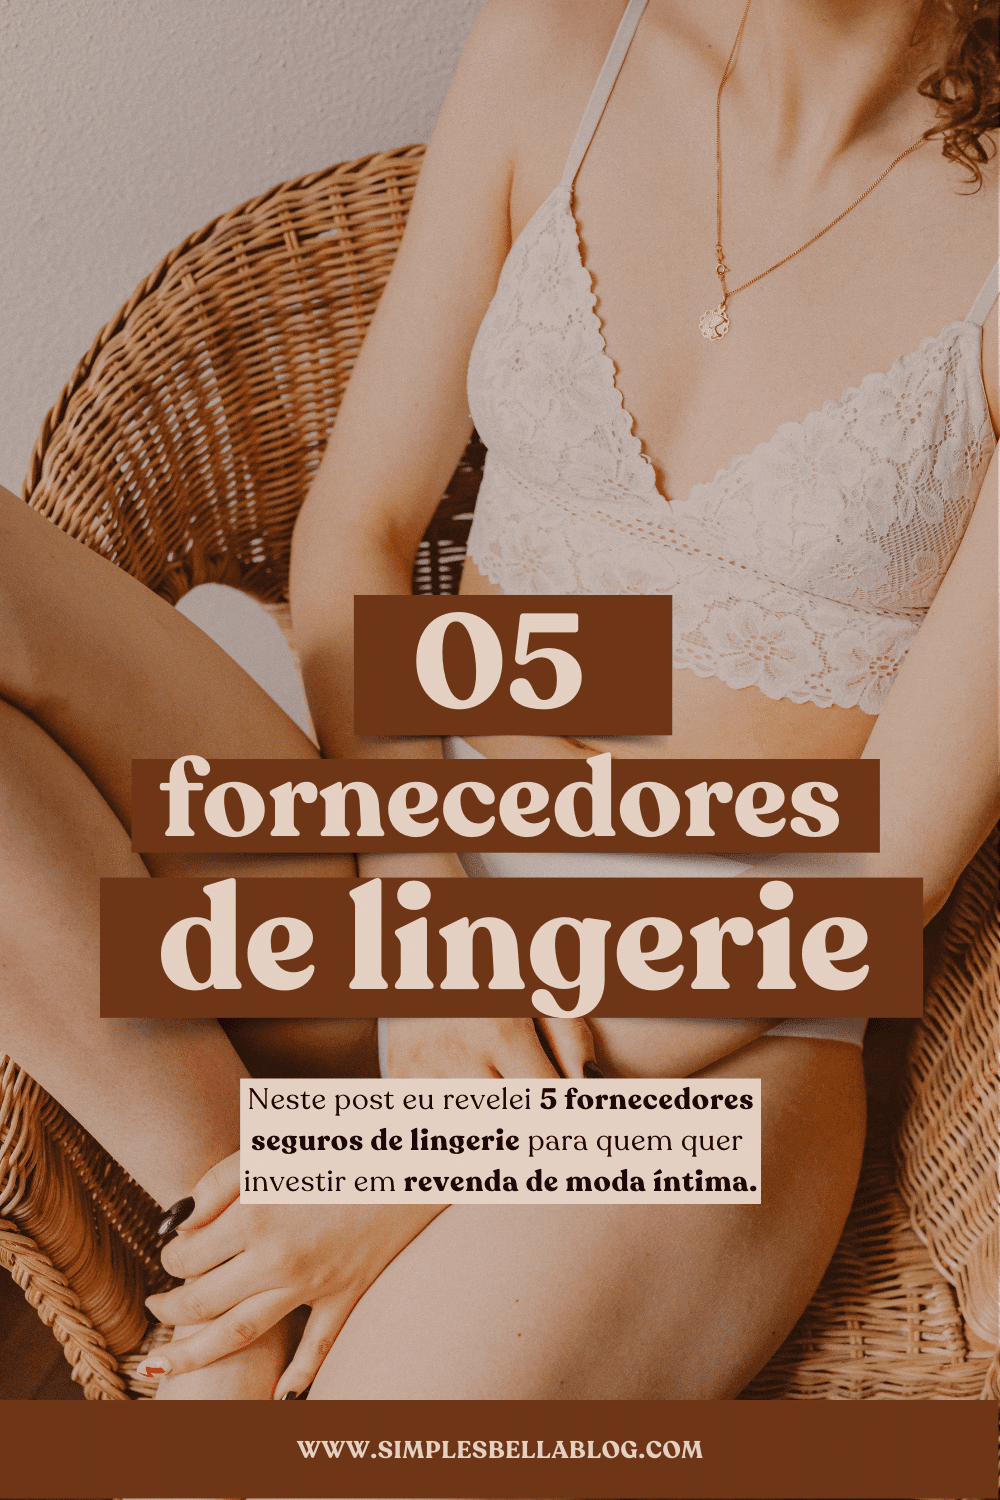 5 fornecedores de lingerie + dicas para iniciar suas vendas